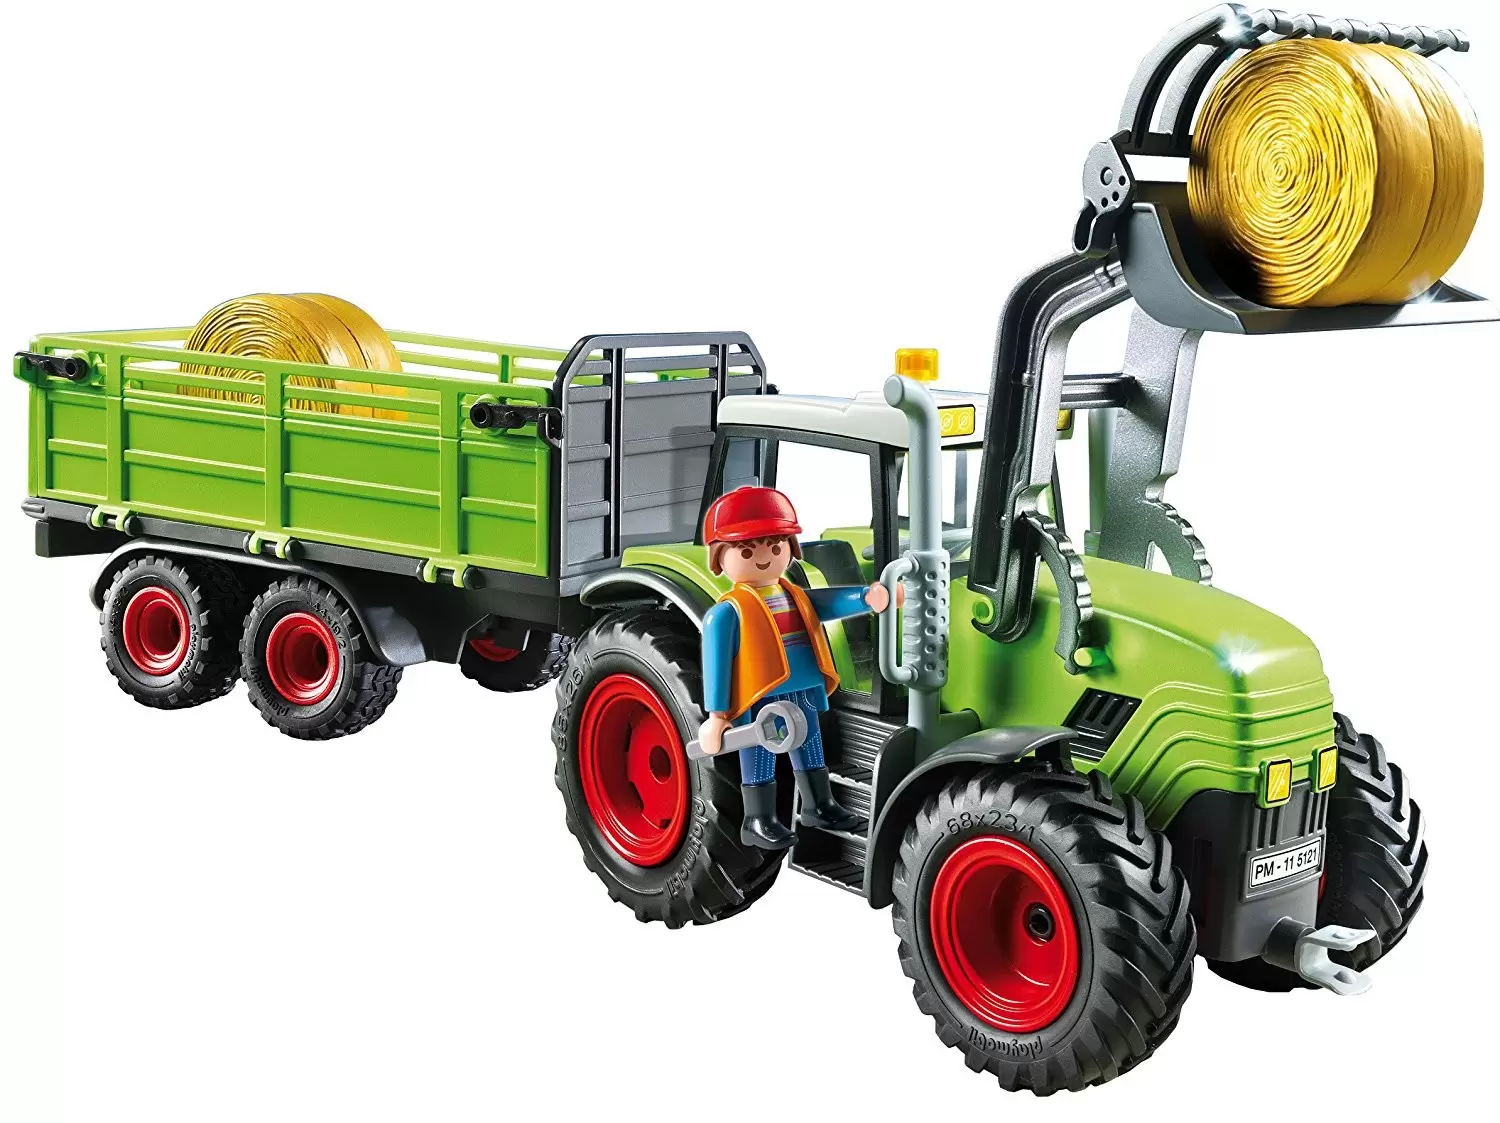 Grand tracteur avec remorque - Playmobil Fermiers 5121